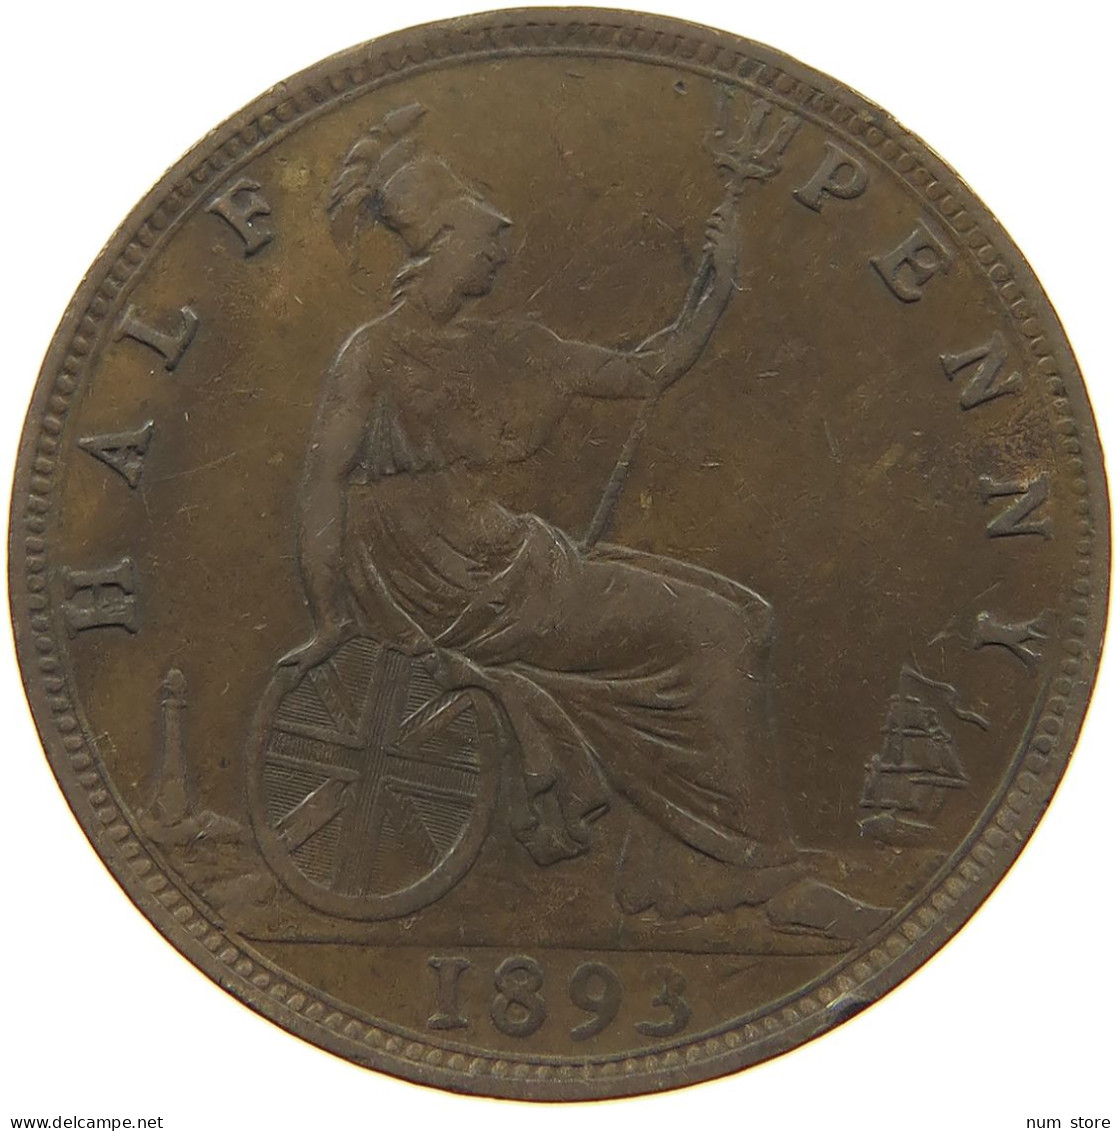 GREAT BRITAIN HALFPENNY 1893 Victoria 1837-1901 #c080 0331 - C. 1/2 Penny